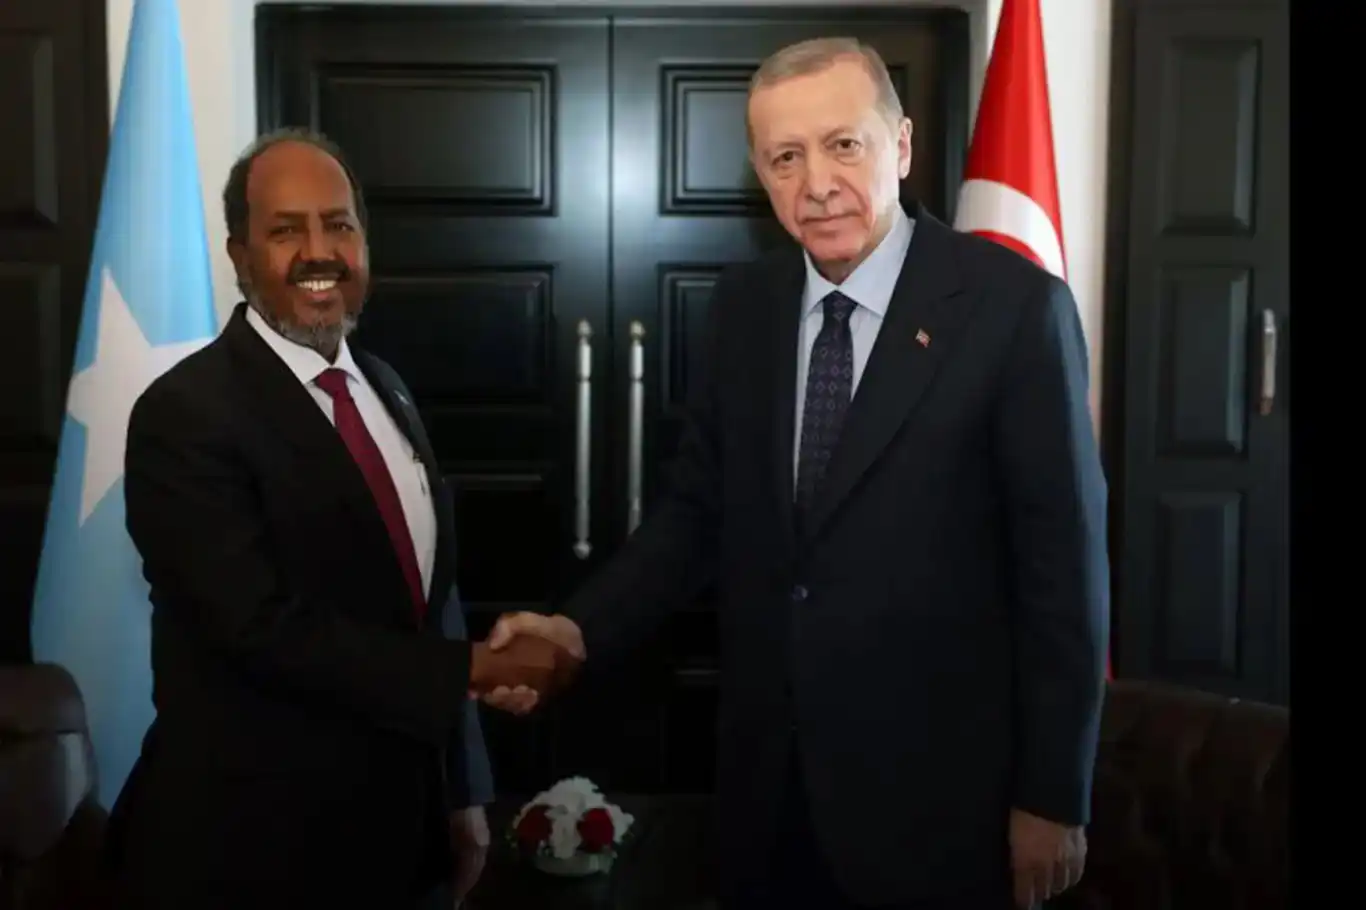 Erdoğan reaffirms Türkiye's support for Somalia in phone call with President Mohamud